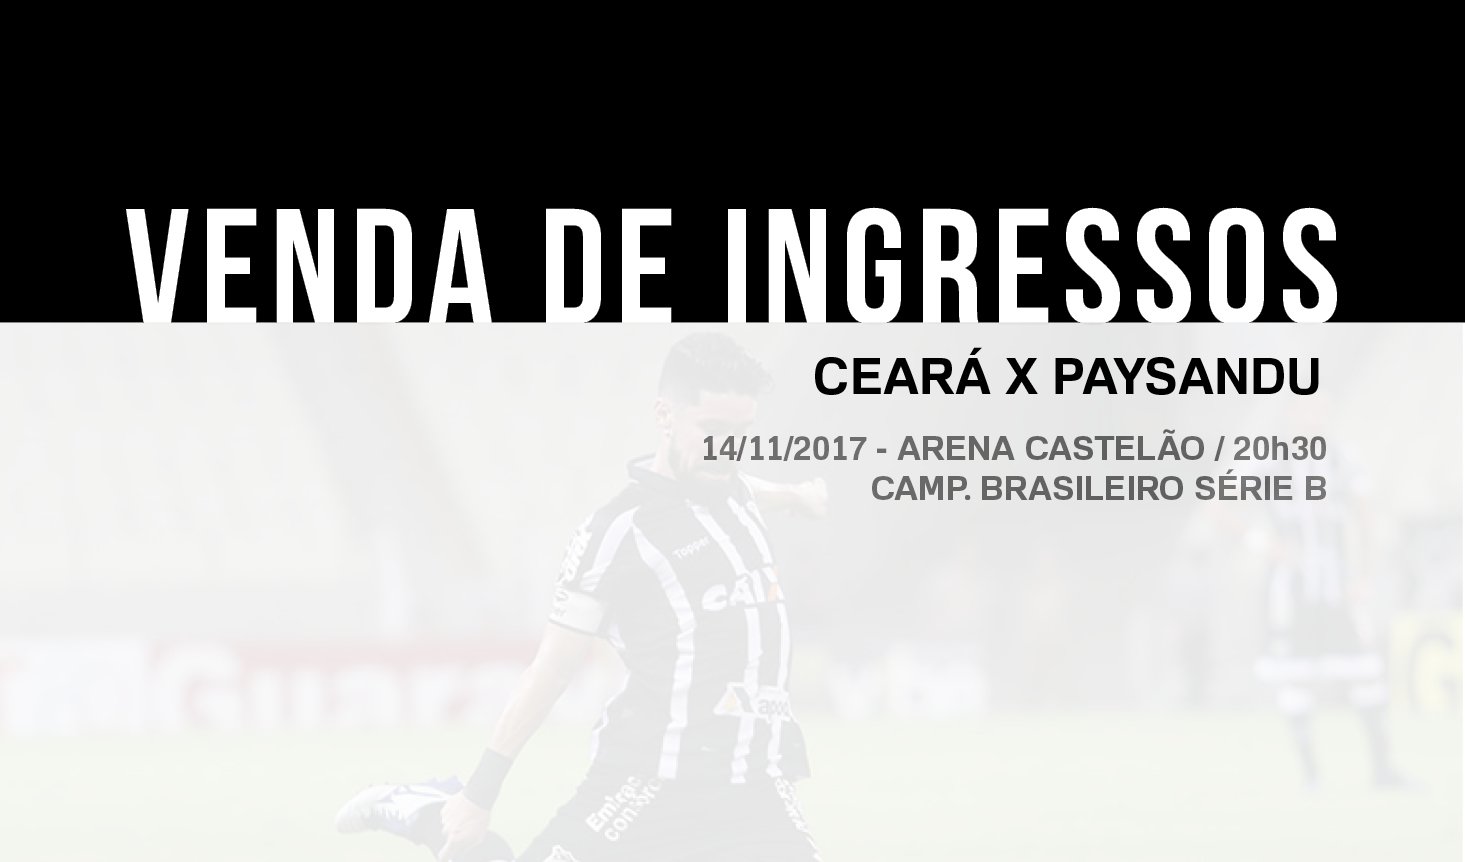 Ceará x Paysandu (venda de ingressos): Confira o horário de funcionamento das lojas nessa terça-feira